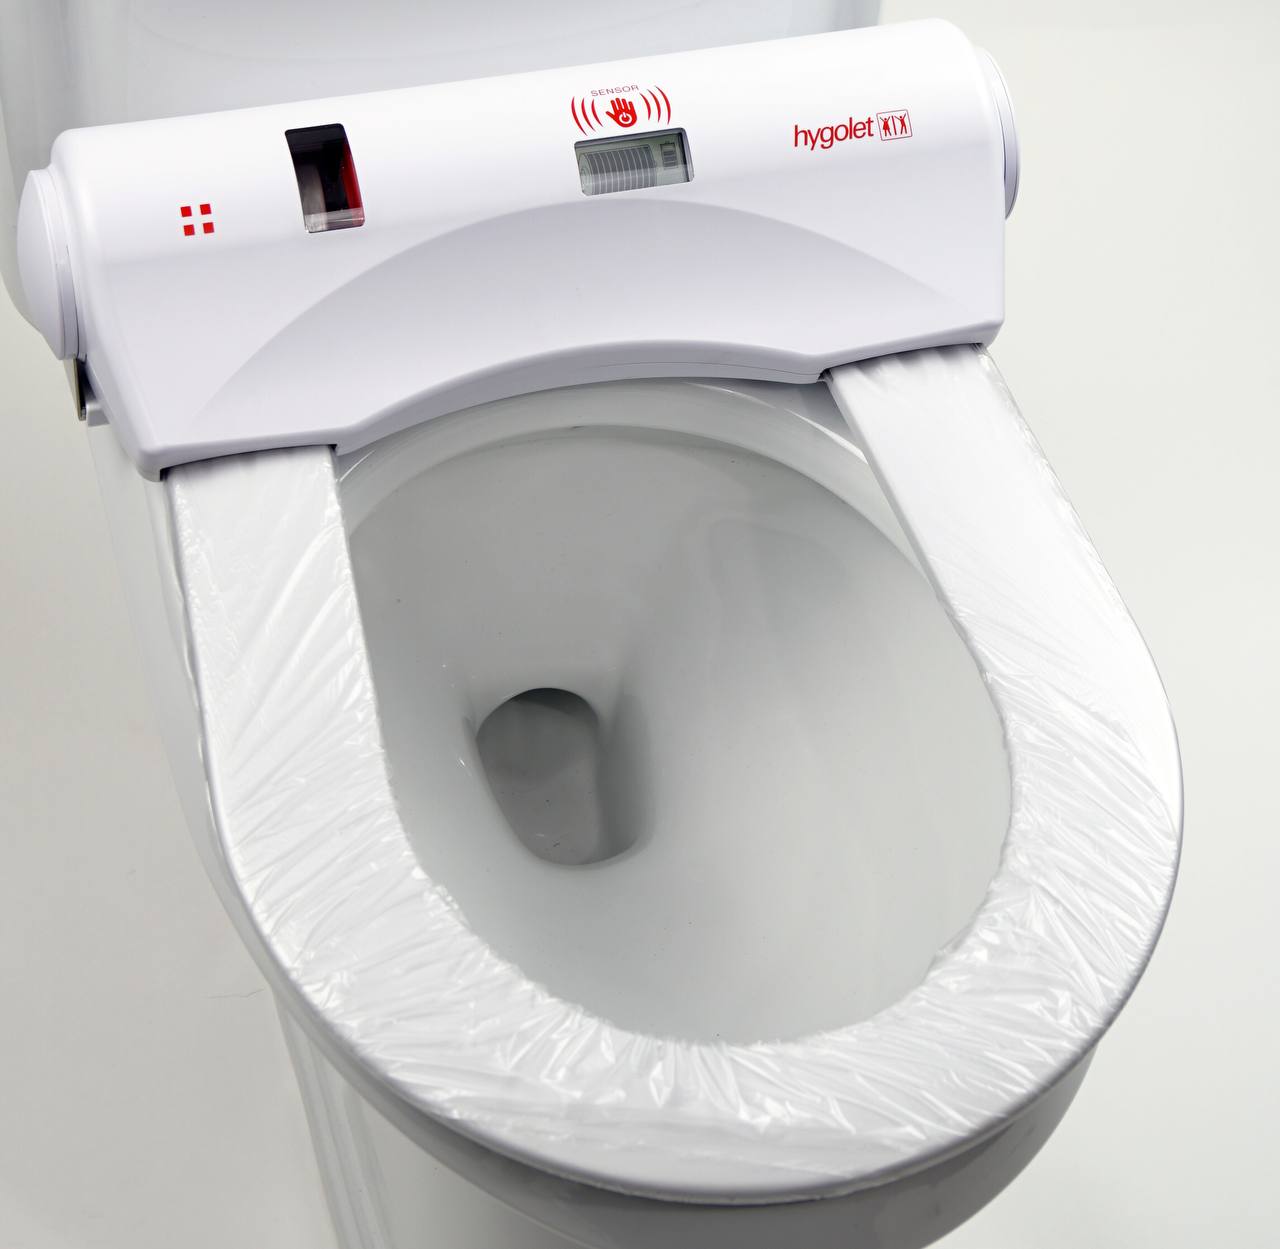 کاور زن توالت فرنگی چیست؟ + دستگاه رول اتوماتیک توالت فرنگی